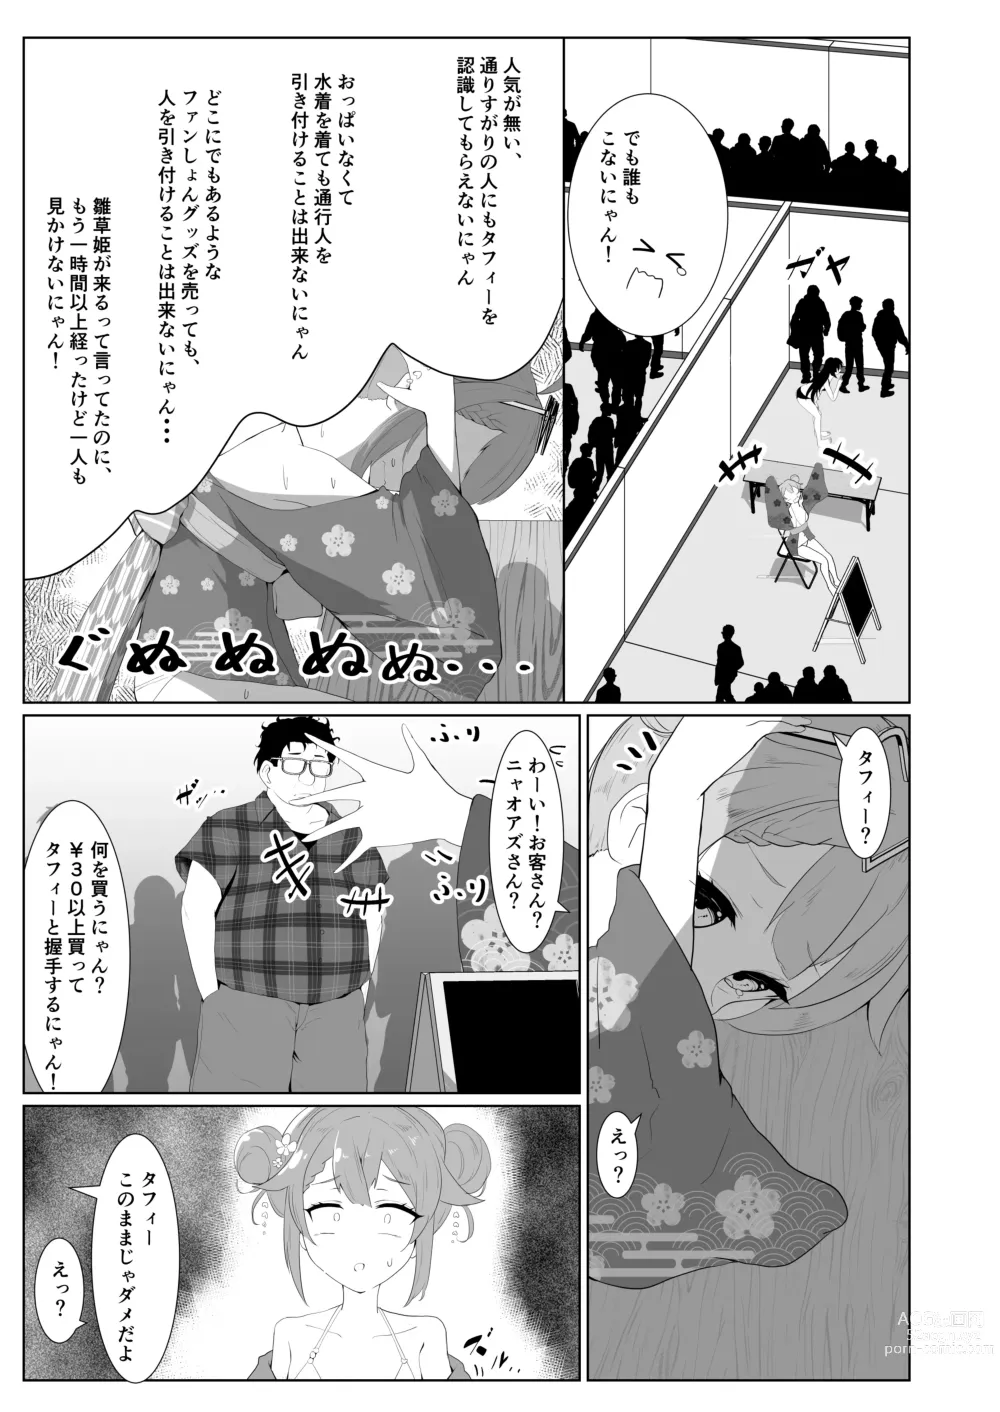 Page 5 of doujinshi Taffy no Hajimete no Event